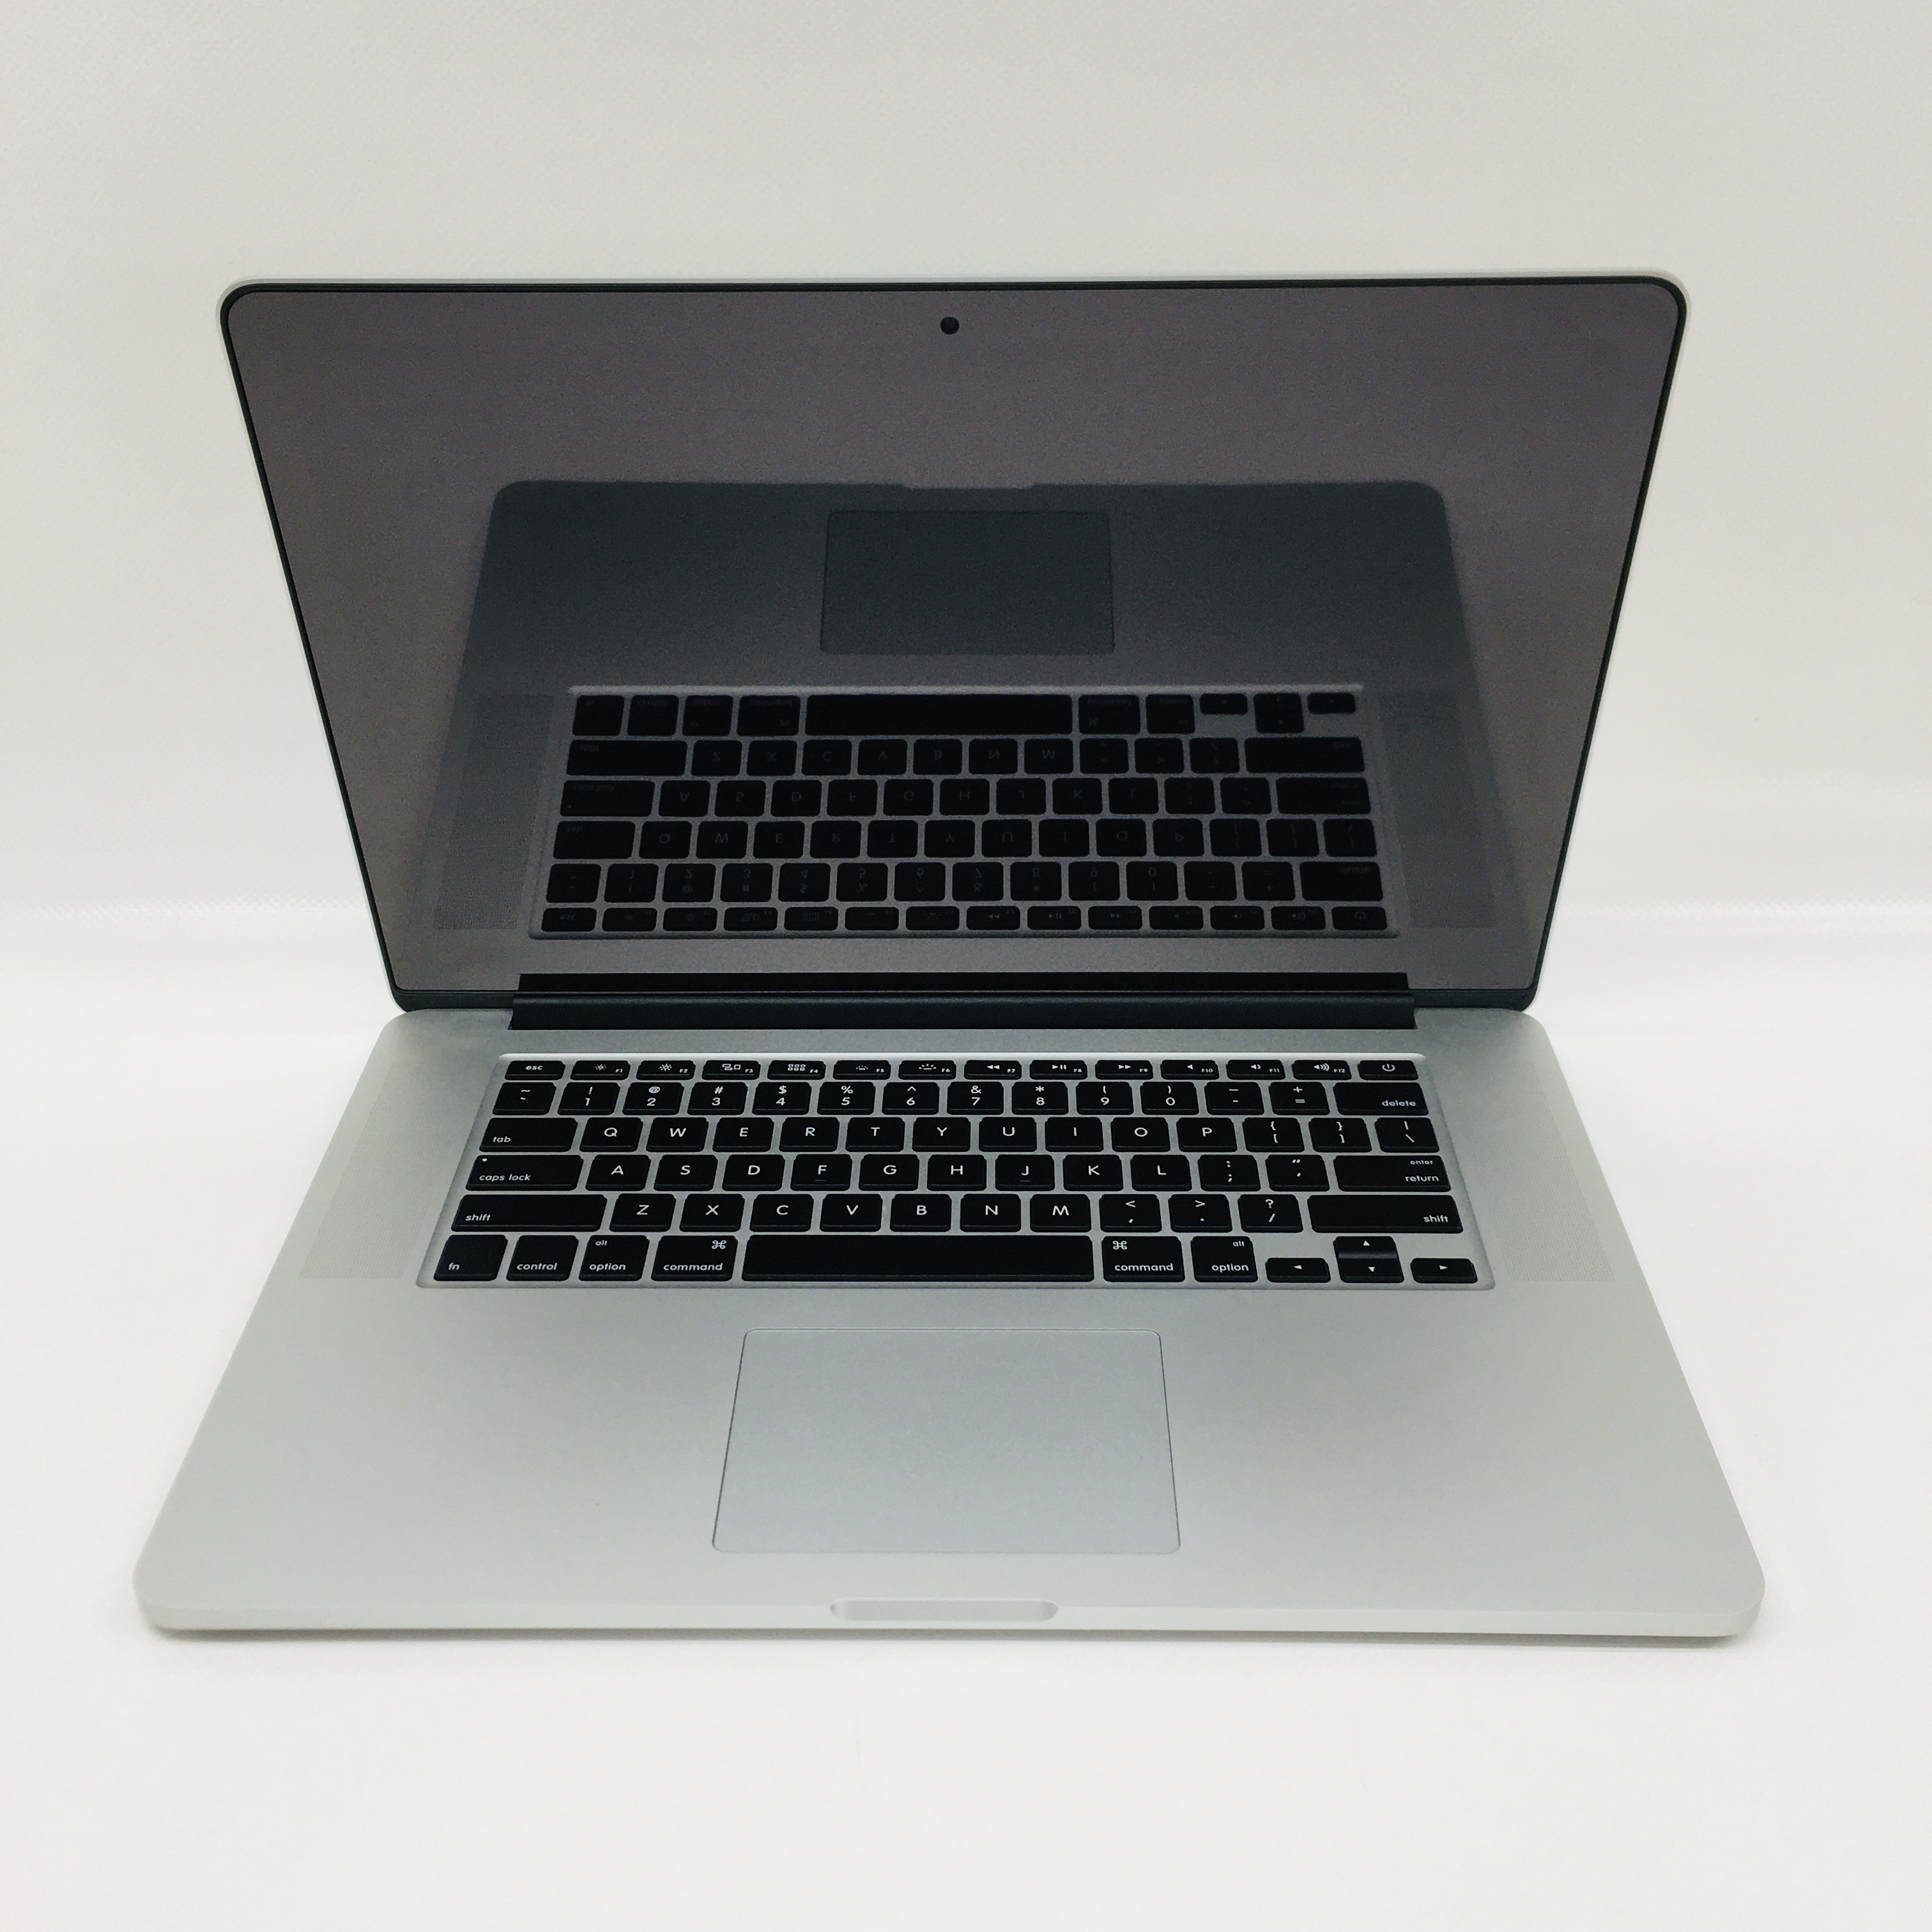 macbook pro i7 16gb ram refurbished